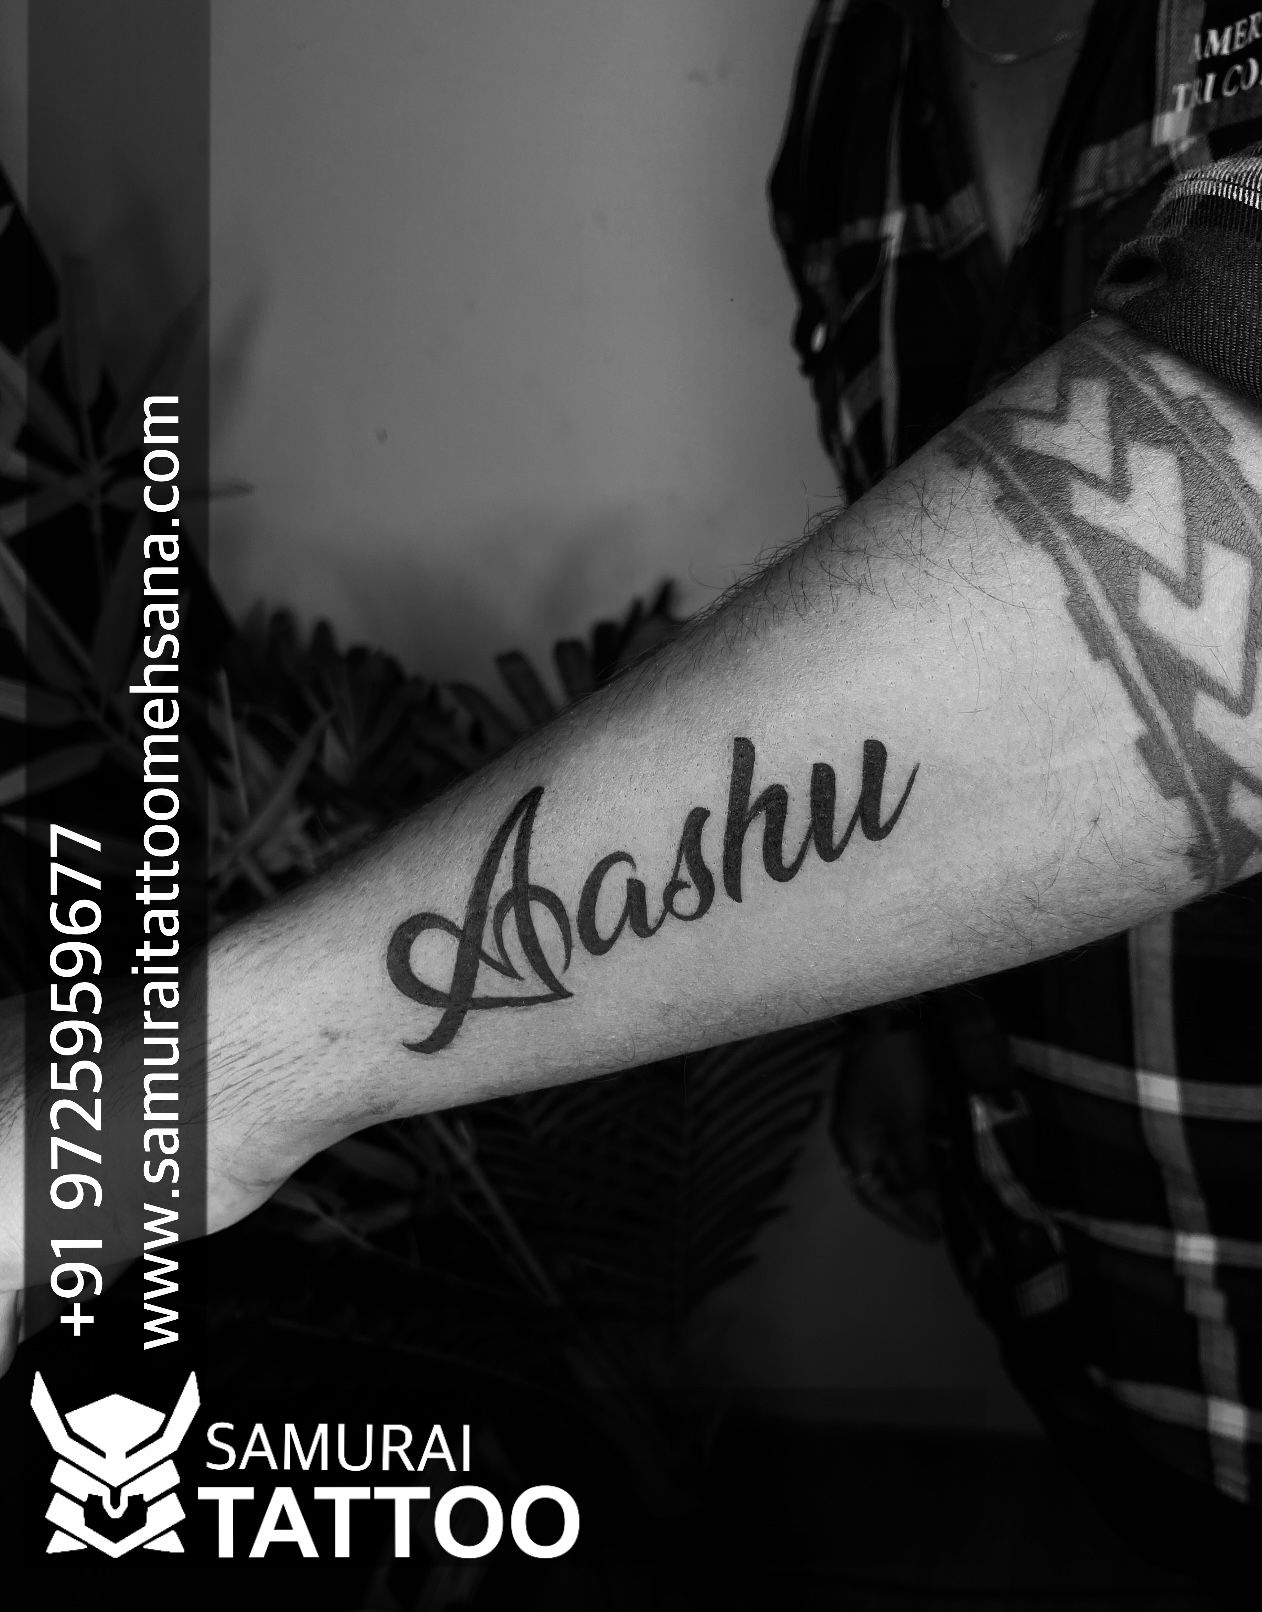 Ashu name tattoo  Name tattoo Tattoos R tattoo